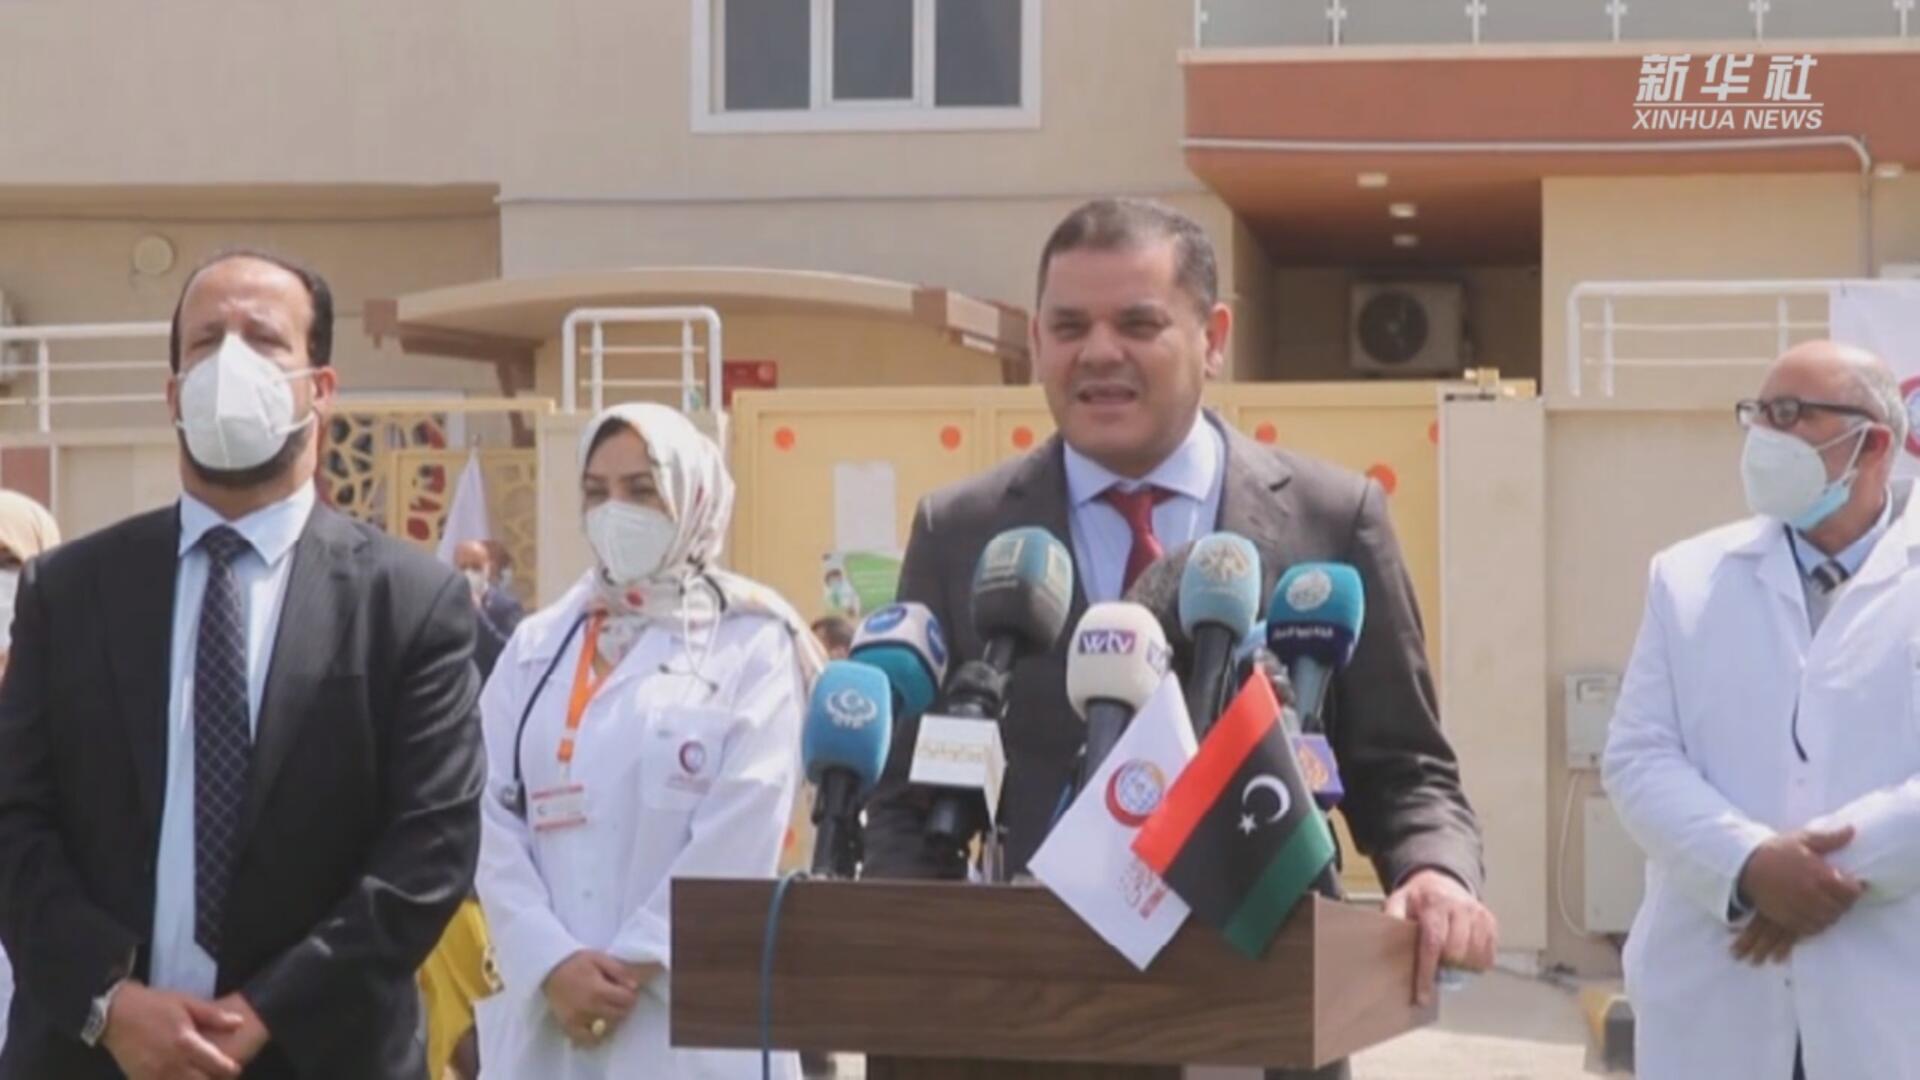 فيديو: انطلاق حملة التطعيم ضد كورونا في ليبيا والدبيبة يتلقى اللقاح